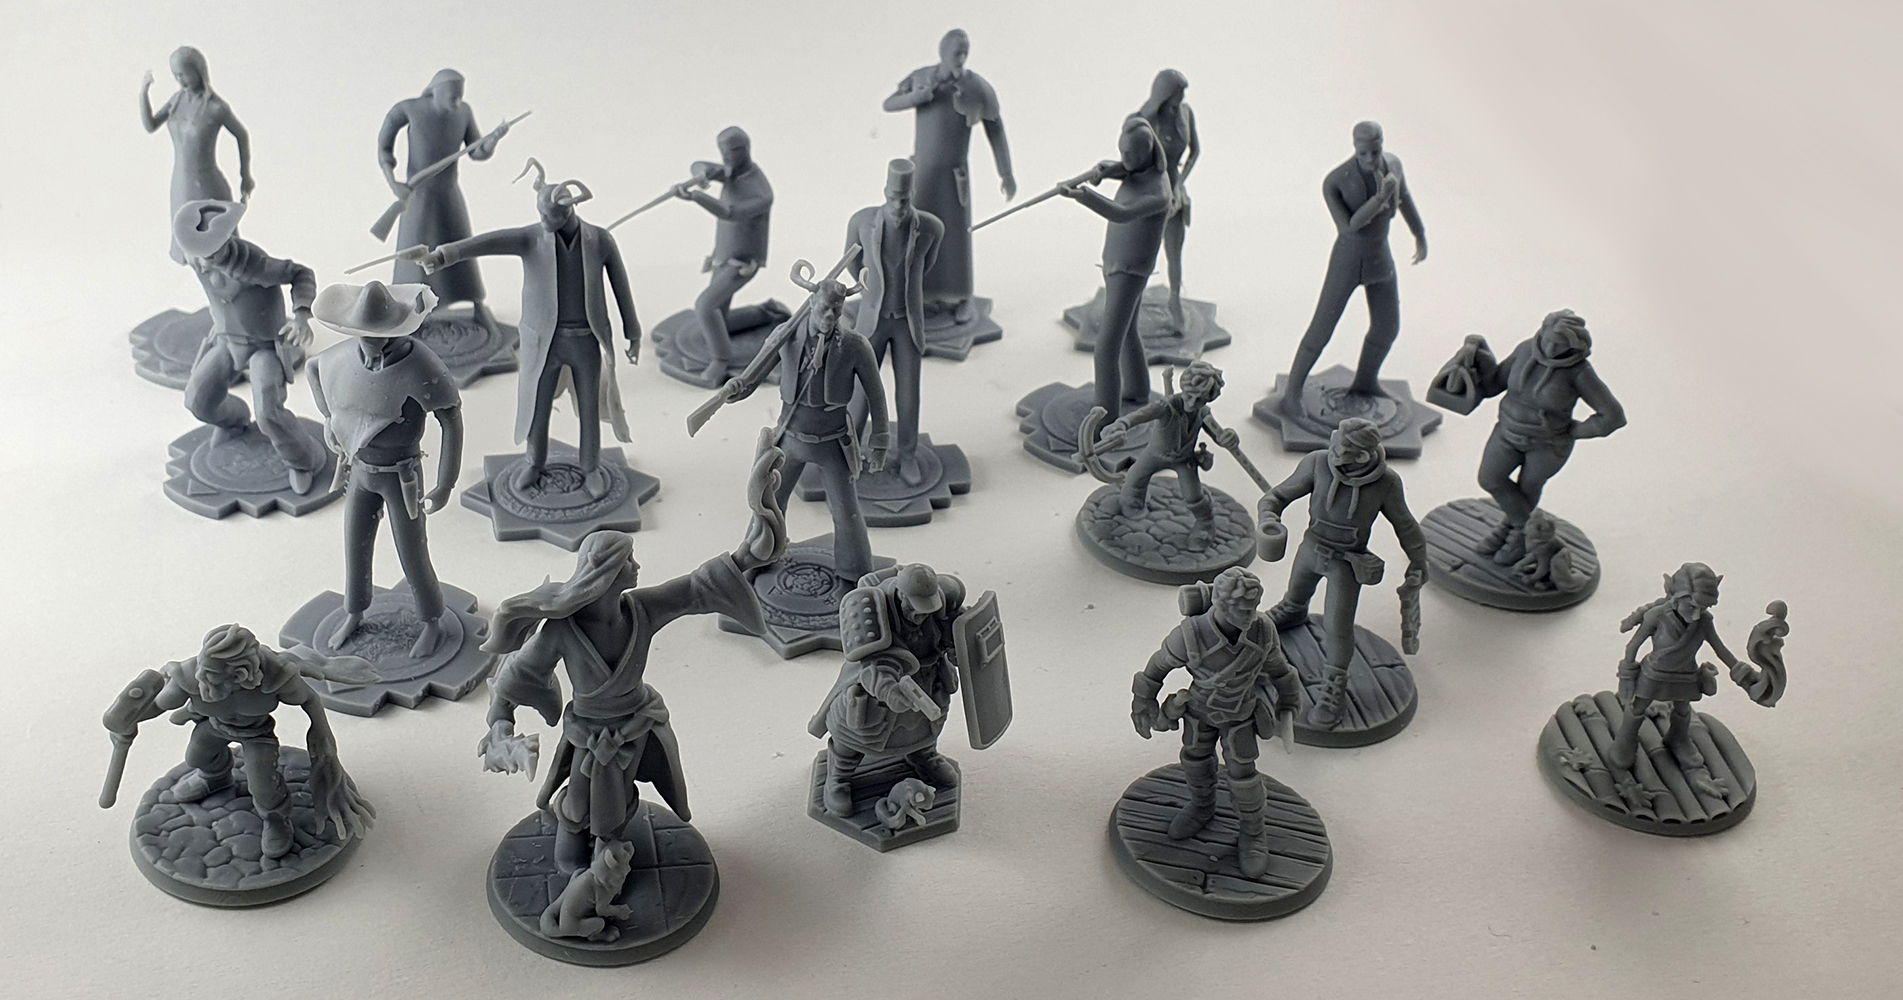 Prototypy figurek postaci do gry planszowej „Hard West” wydrukowane w technologii druku 3D